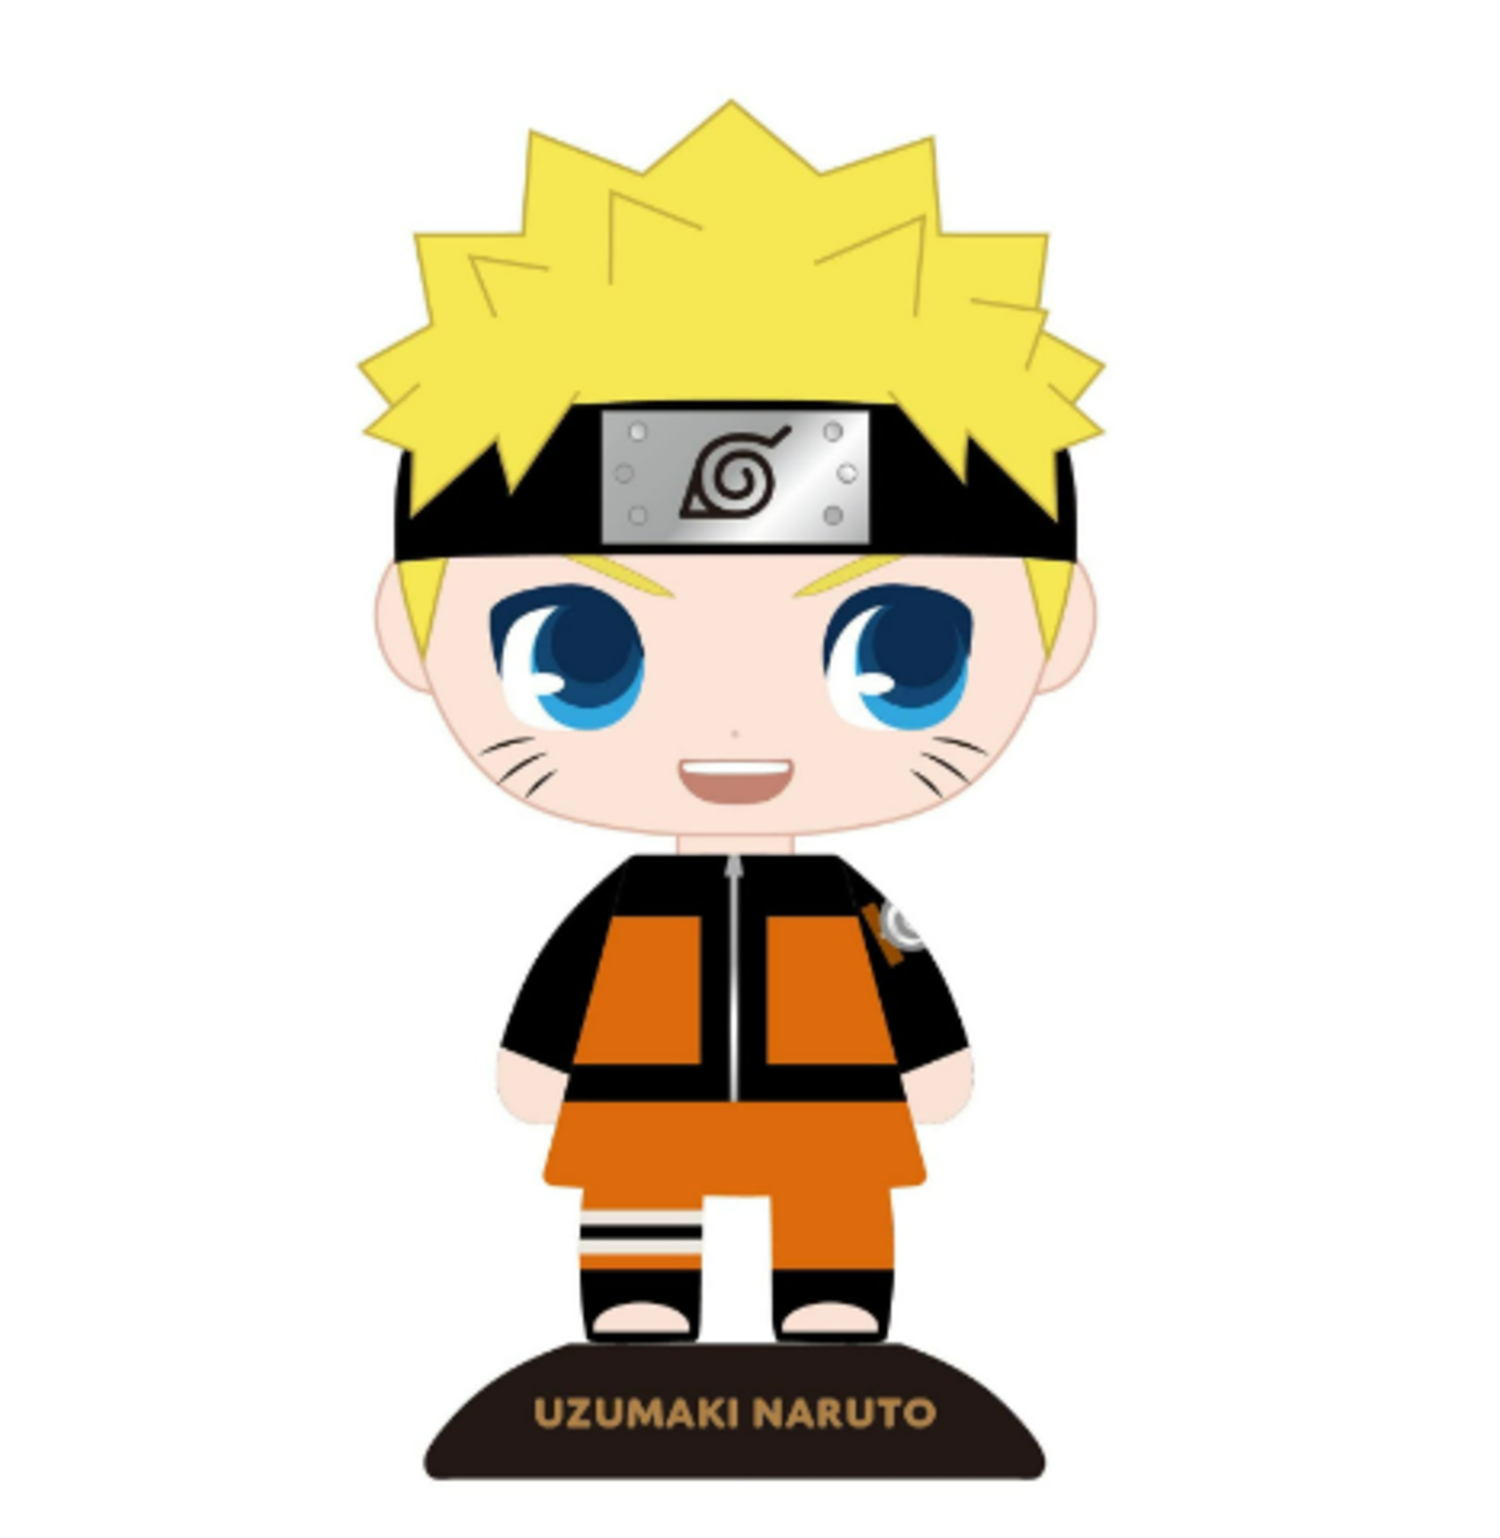 Nendoroid Naruto: Nendoroid Naruto là một sản phẩm độc đáo với thiết kế đẹp mắt và đầy cá tính. Bạn sẽ thấy các chi tiết chân thực và độc đáo được thể hiện qua sản phẩm này. Hãy xem và cảm nhận cùng Nendoroid Naruto.